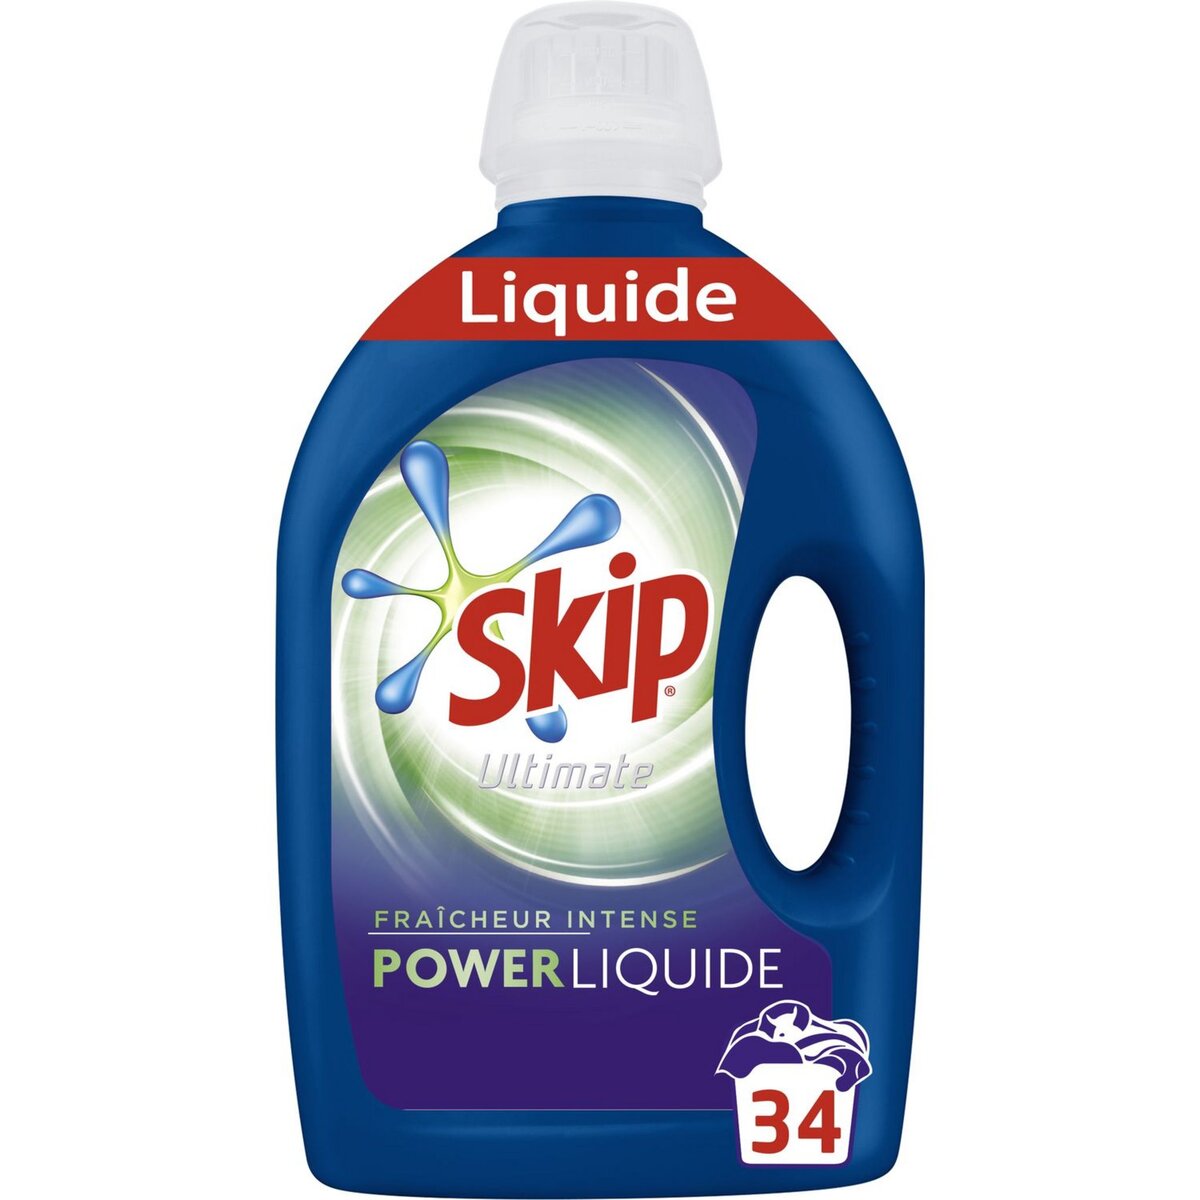 SKIP Skip Ultimate lessive liquide fraîcheur intense 34 lavages 1,7l 34 lavages 1,7l